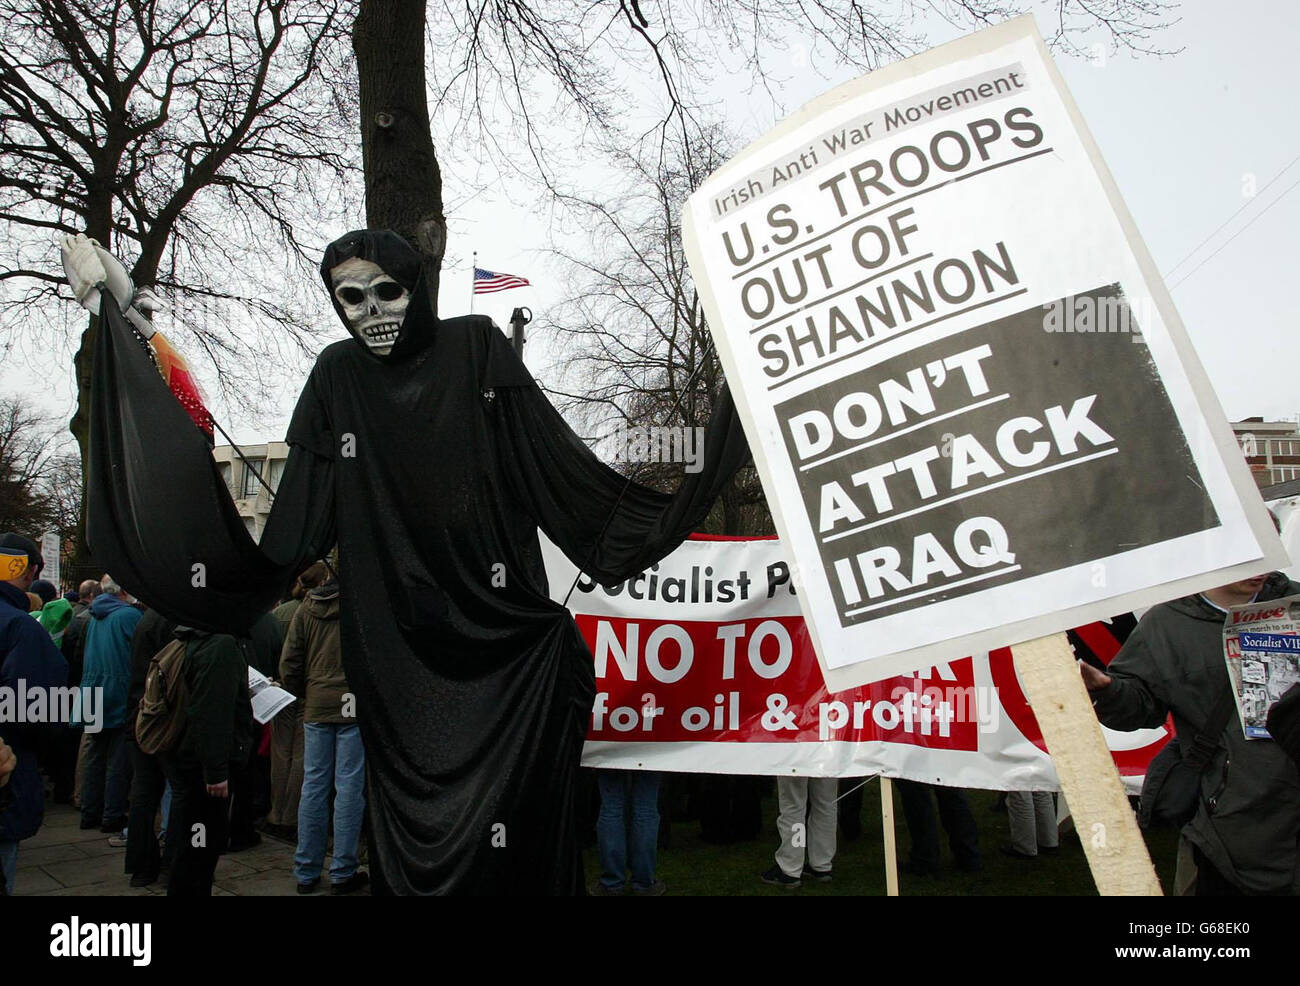 Liz Curry in costume, guida dimostranti durante la protesta contro la possibile guerra contro l'Iraq, al di fuori dell'ambasciata americana a Dublino, in occasione della Giornata internazionale delle donne. Foto Stock